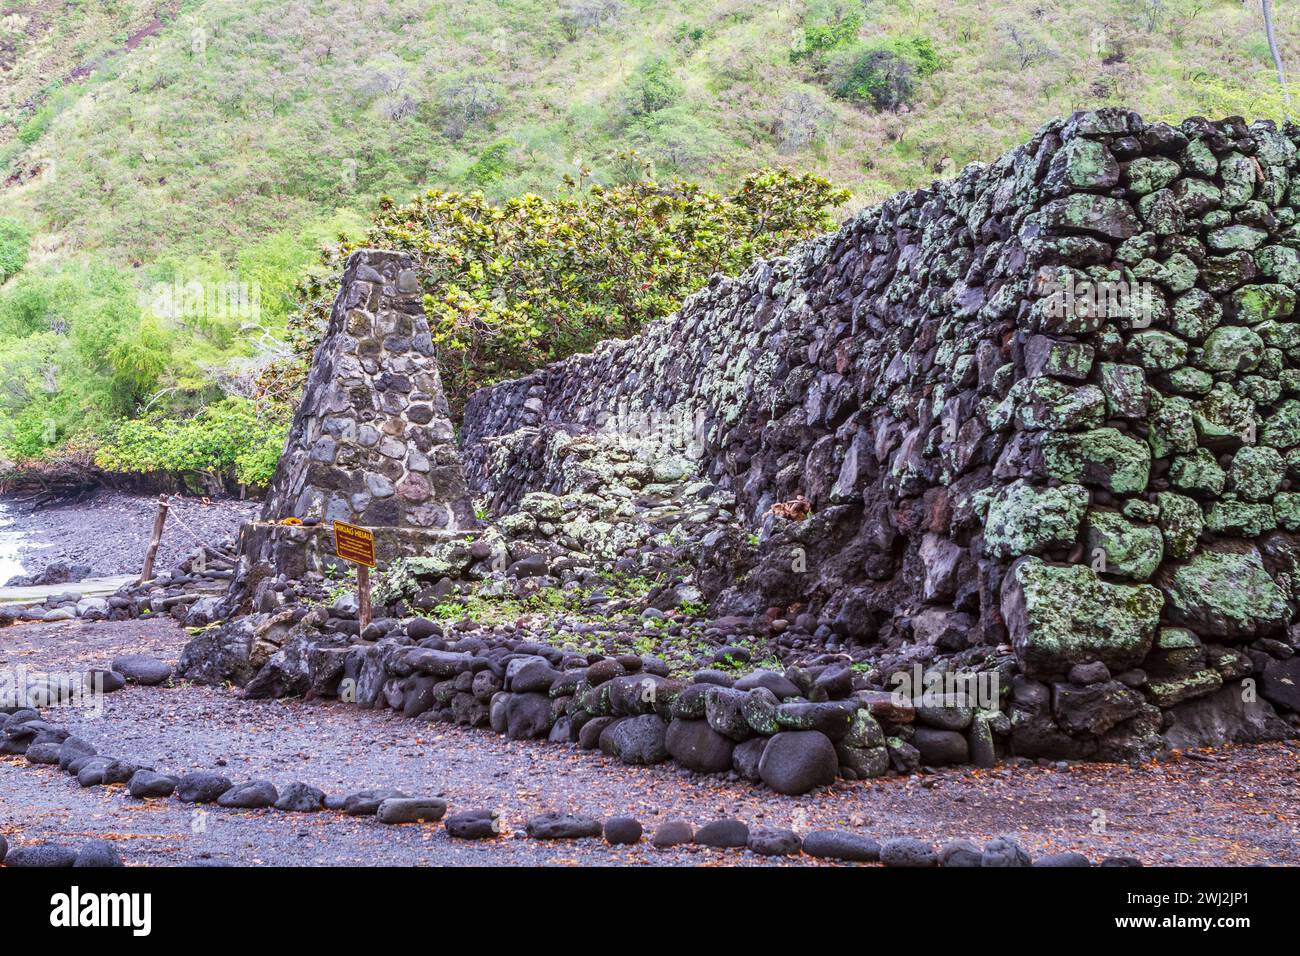 El Hikiau Heiau es una gran plataforma de roca apilada en el Parque Histórico Estatal de Kealakekua Bay, Big Island, Hawai, donde se realizaron ceremonias. Foto de stock